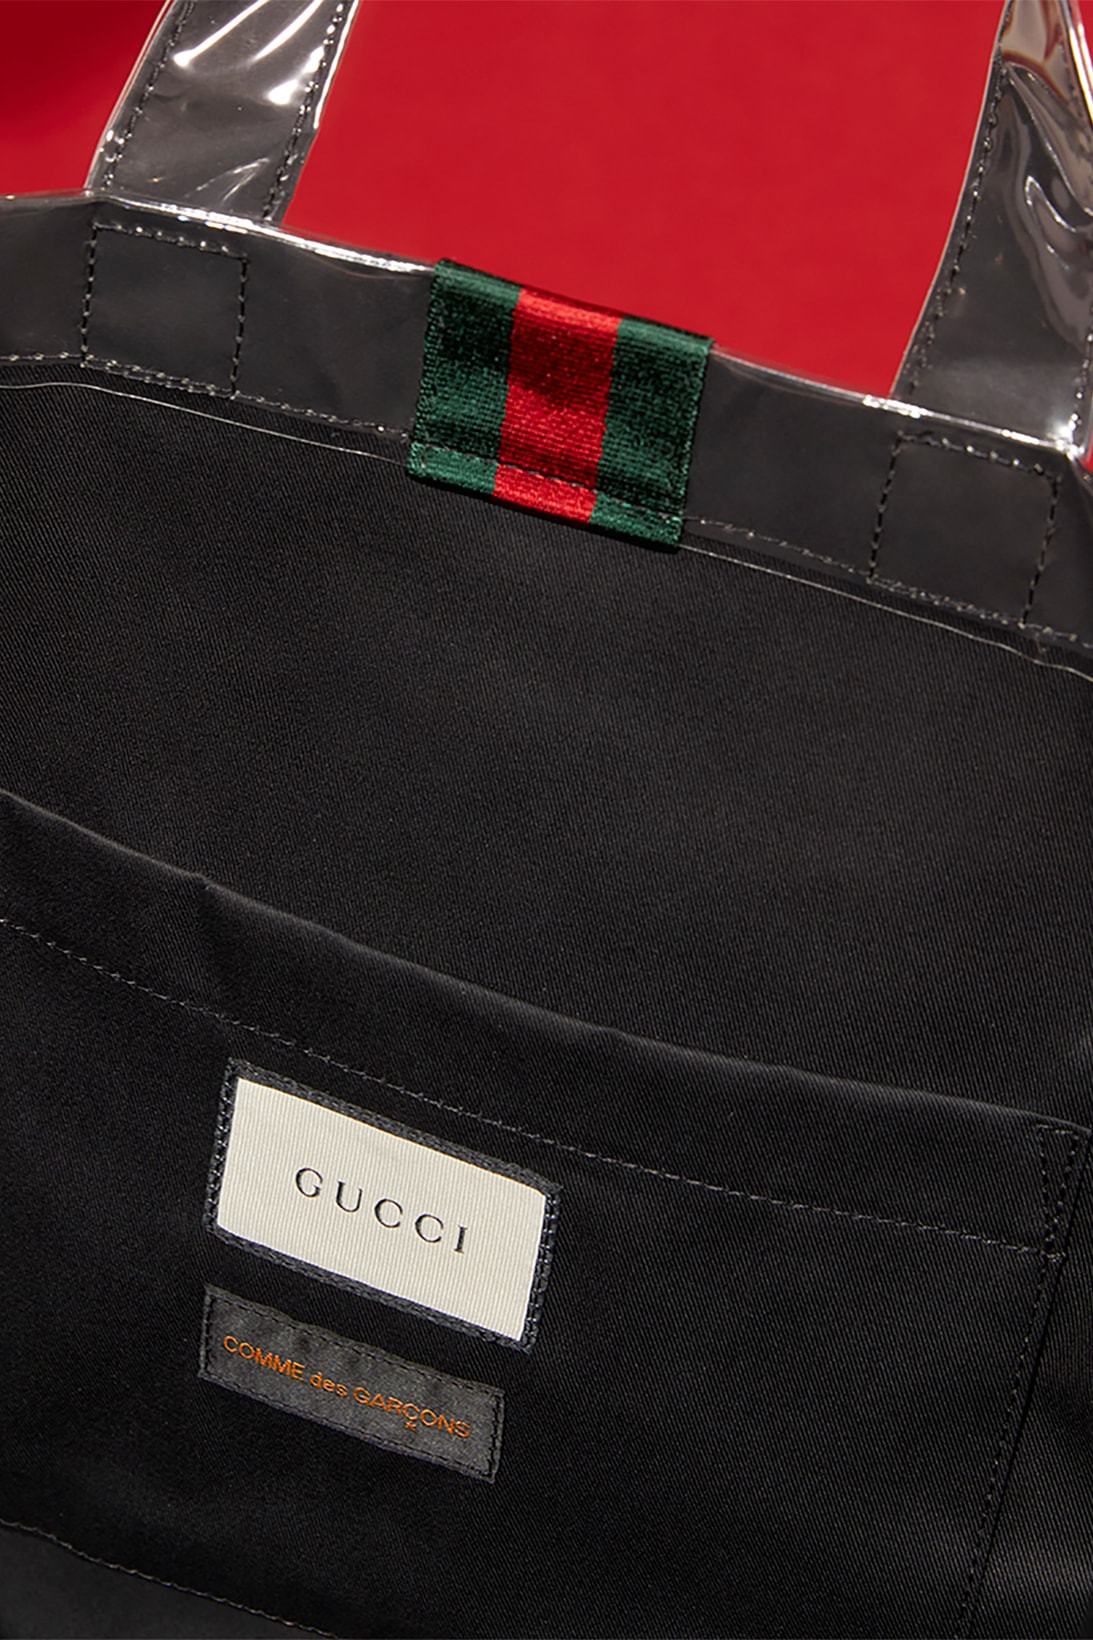 Gucci COMME des GARÇONS CdG Capsule Collection Collaboration